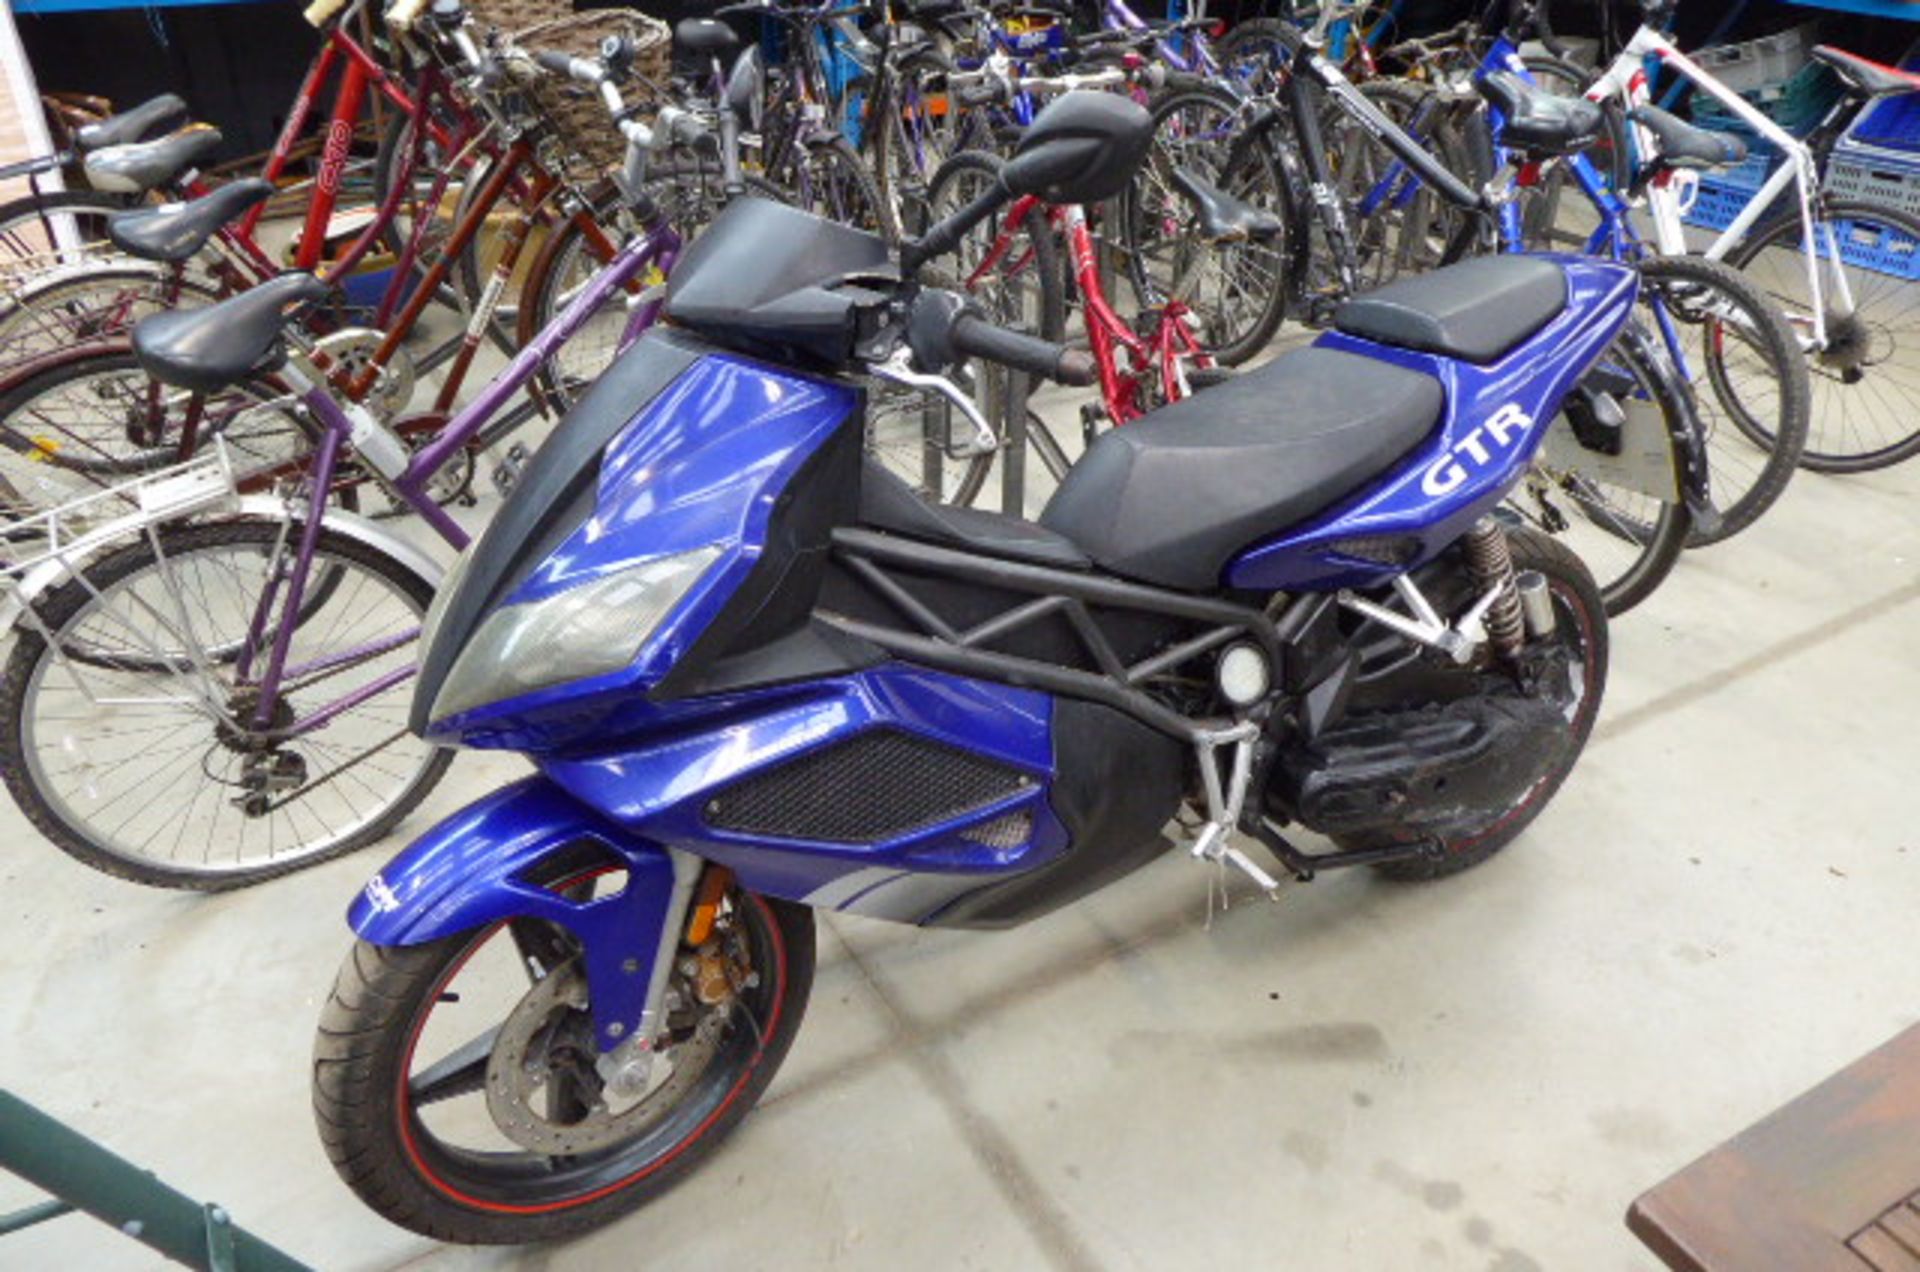 Blue Honda GTR 125 motorcycle